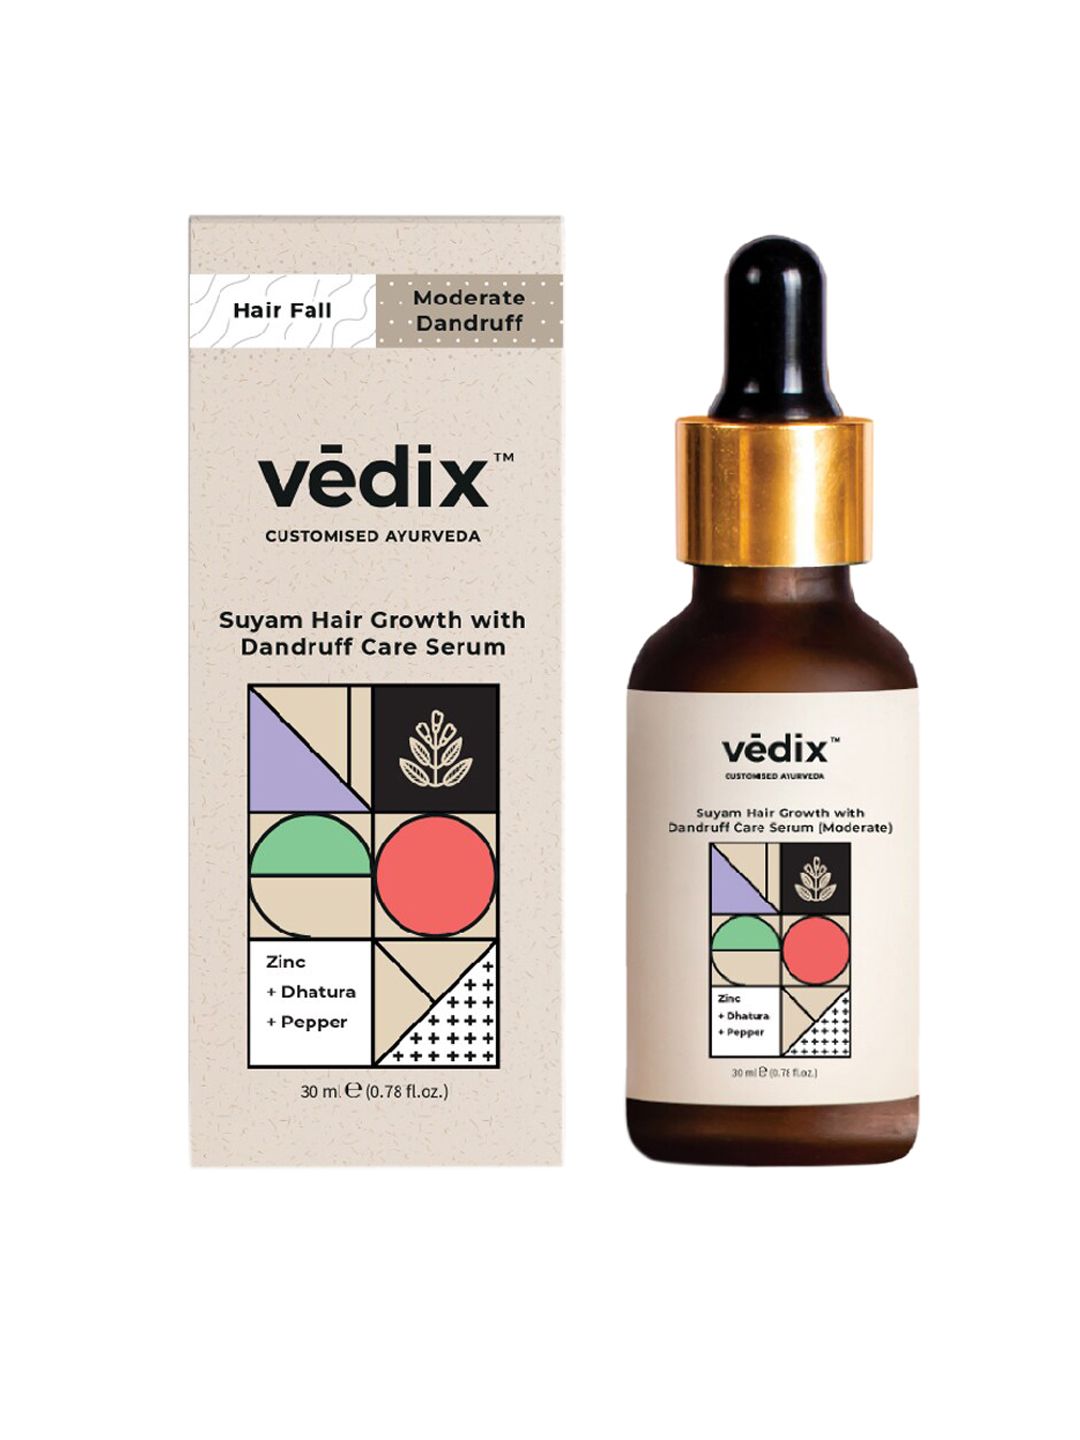 VEDIX Customized Ayurvedic Suyam Hair Growth with Dandruff Care Serum 30 ml Price in India